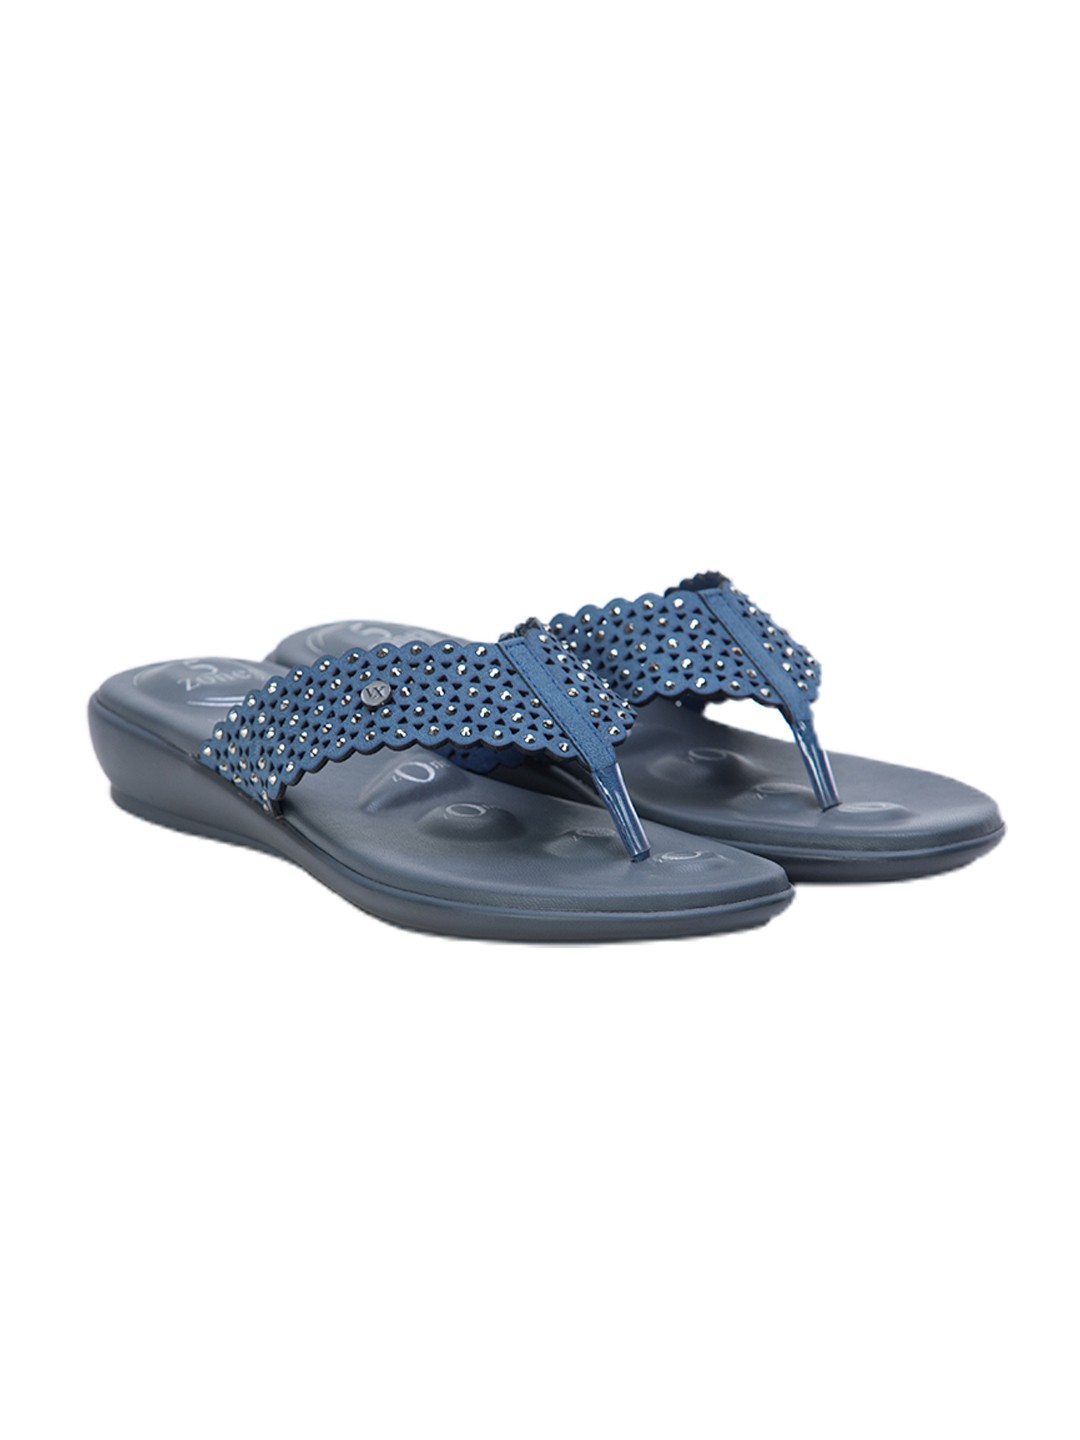 Buy Von Wellx Germany Comfort Gleam Blue Slippers Online in Bhubaneswar